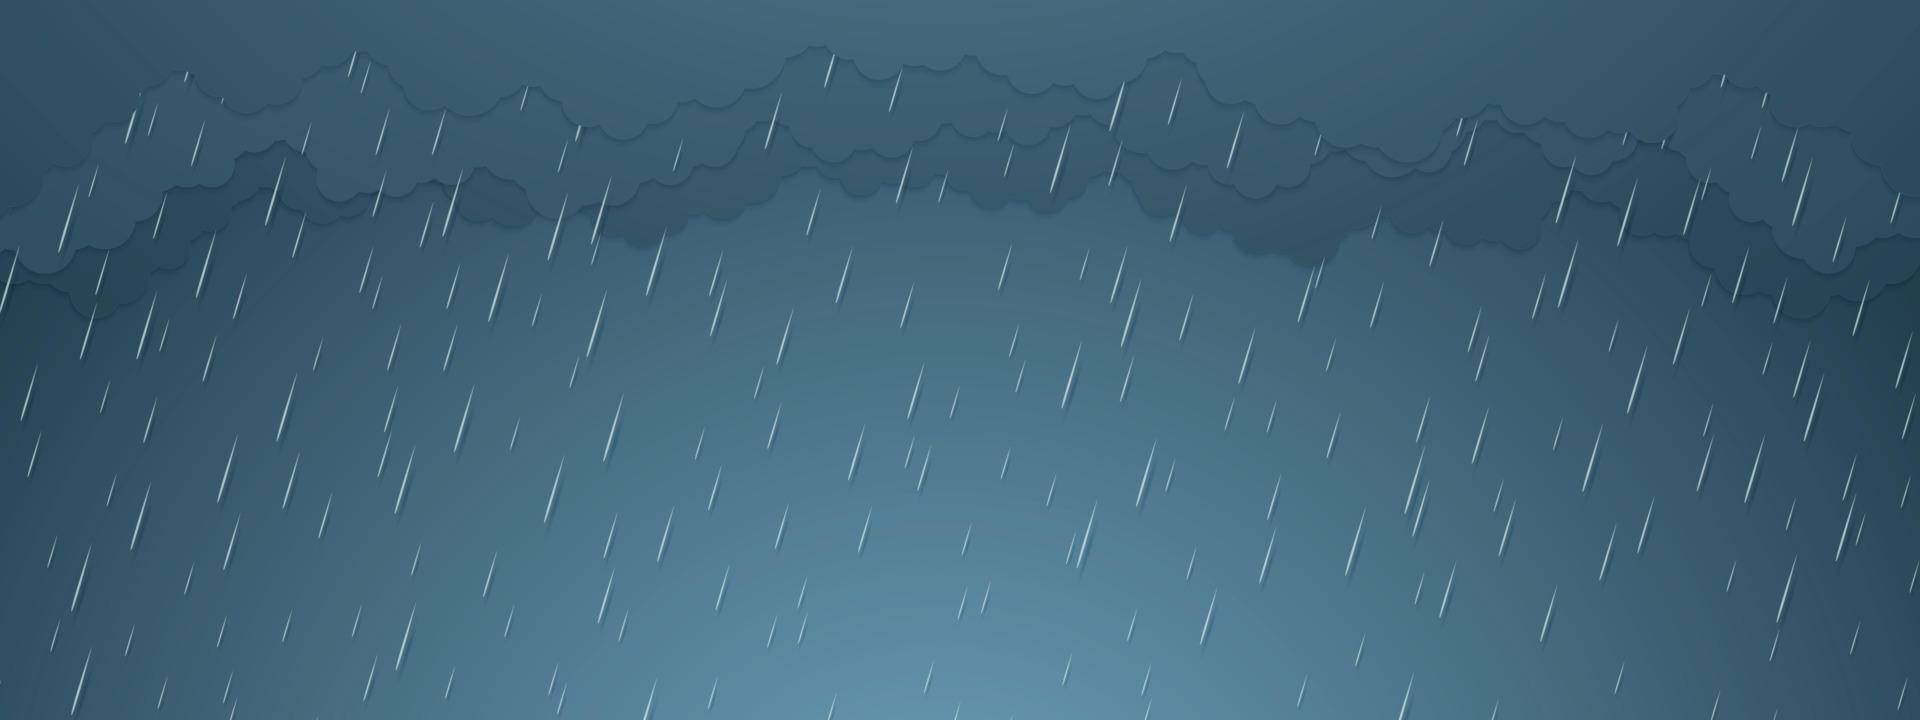 ilustração vetorial, tempestade, fundo de chuva, estação das chuvas, estilo de arte em papel vetor